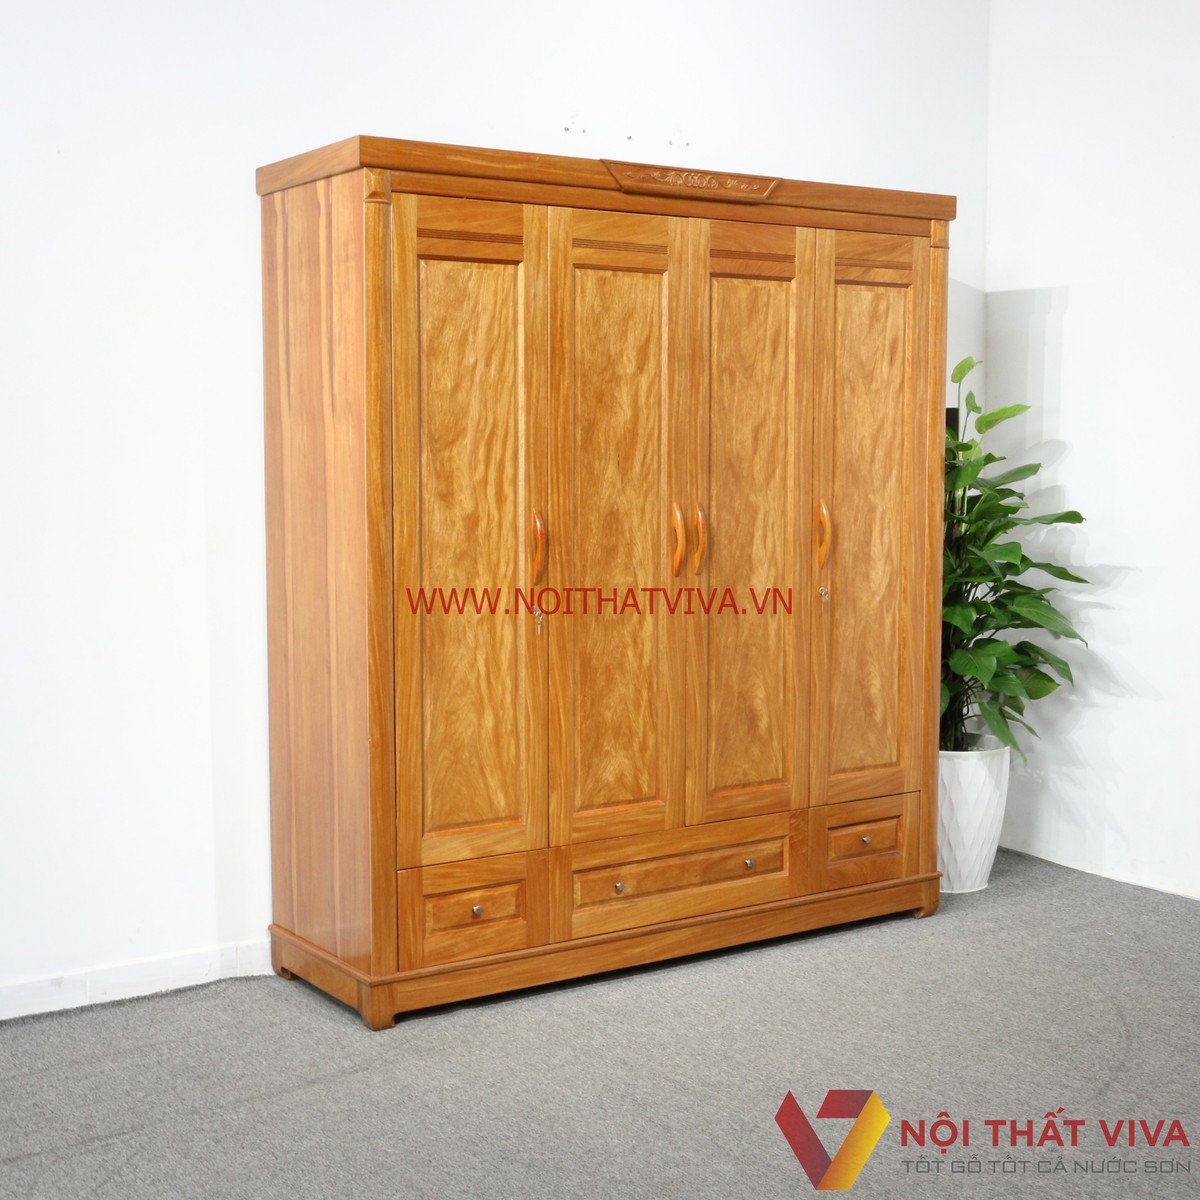 10 mẫu tủ áo 3 buồng đẹp gỗ tự nhiên và gỗ MDF giá thấp, chất lượng cao